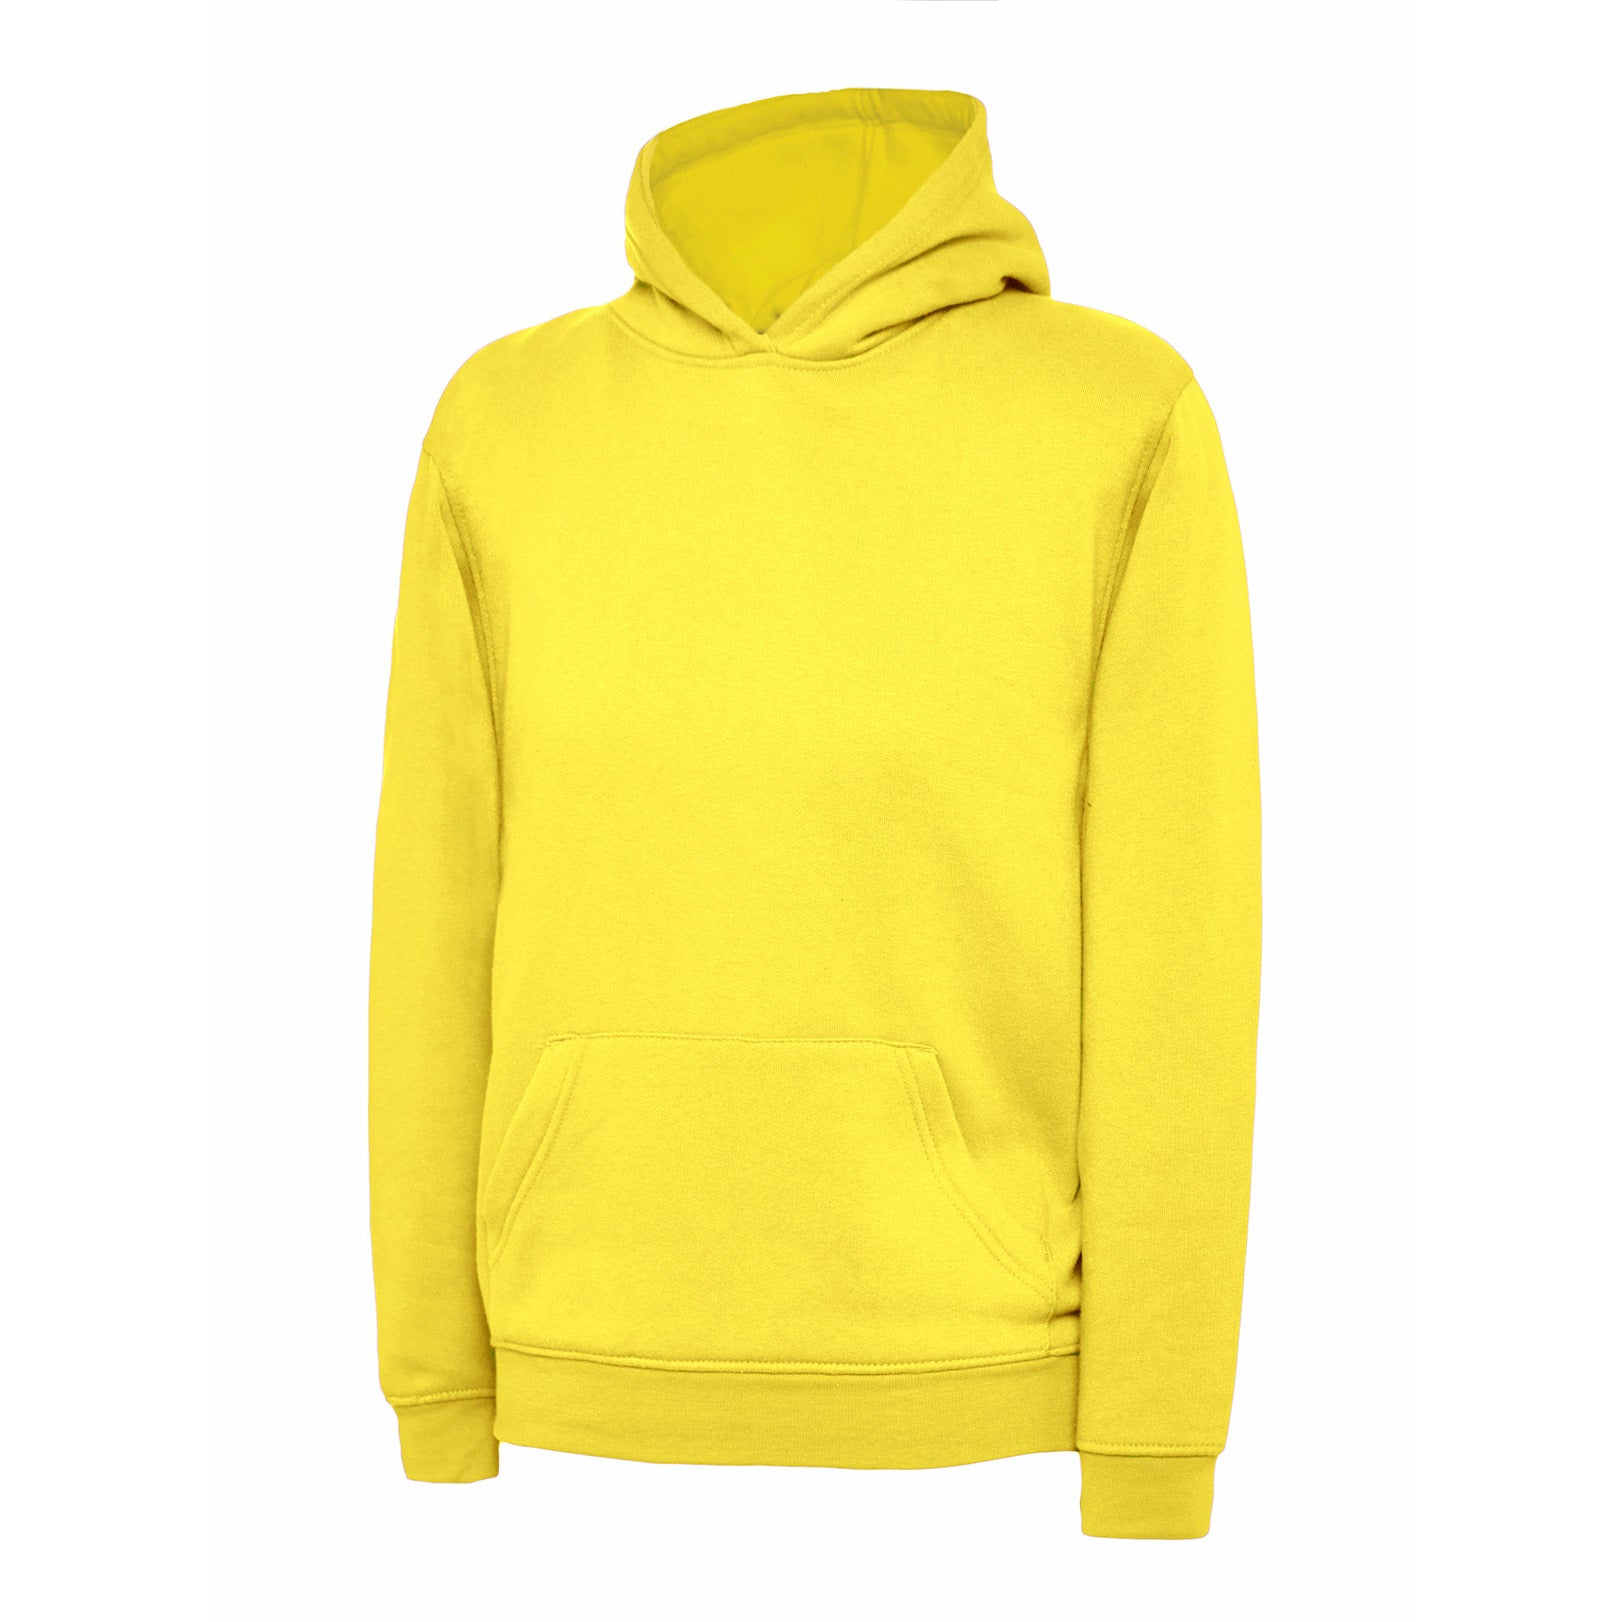 Childrens Hooded Sweatshirt (5 - 13 YRS) Yellow